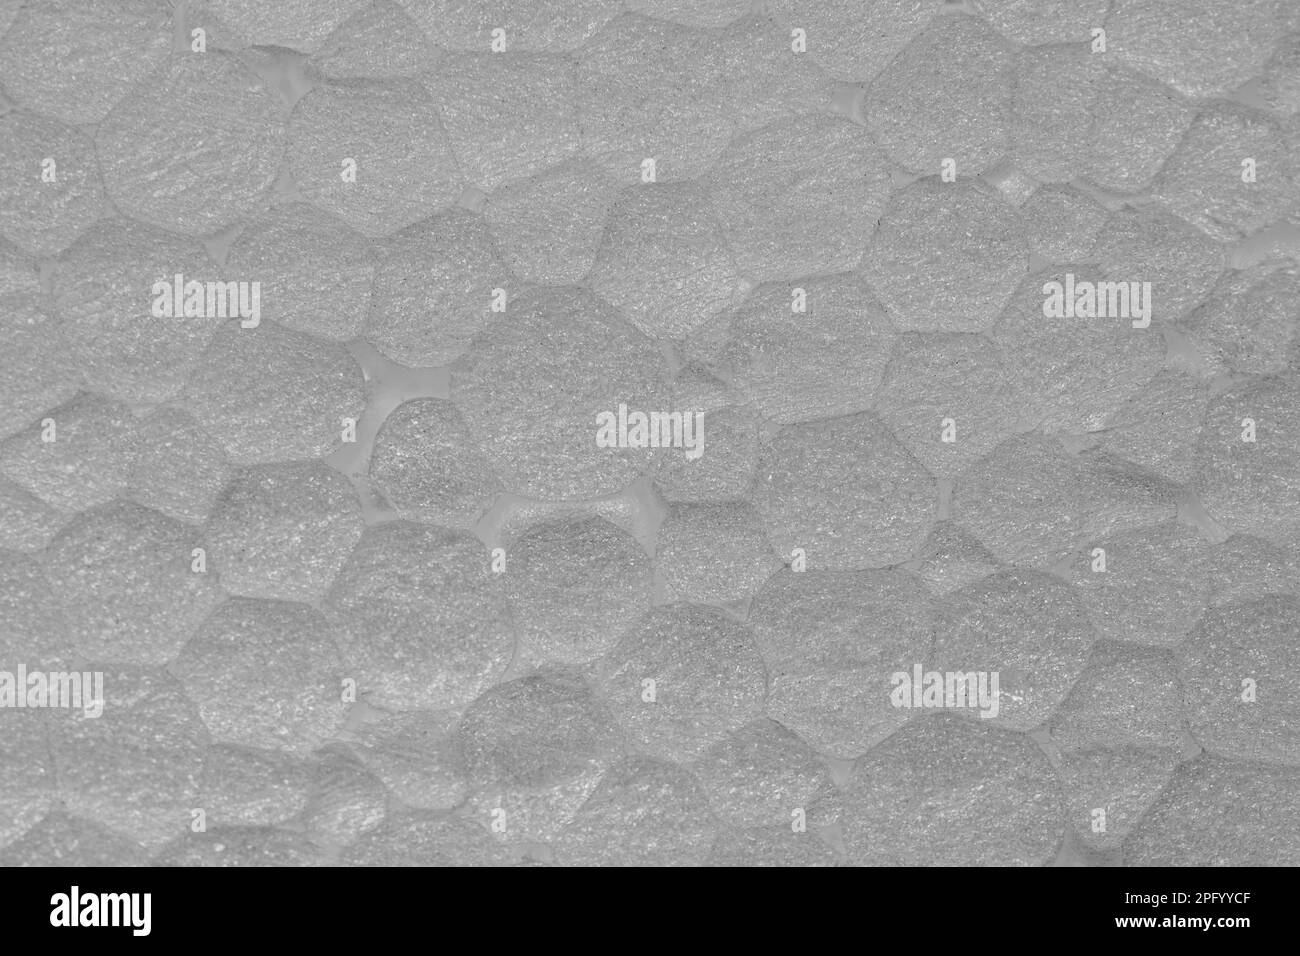 Typische Struktur und Oberfläche von exp eps-geschäumten Polystyrolschaumplatten Stockfoto